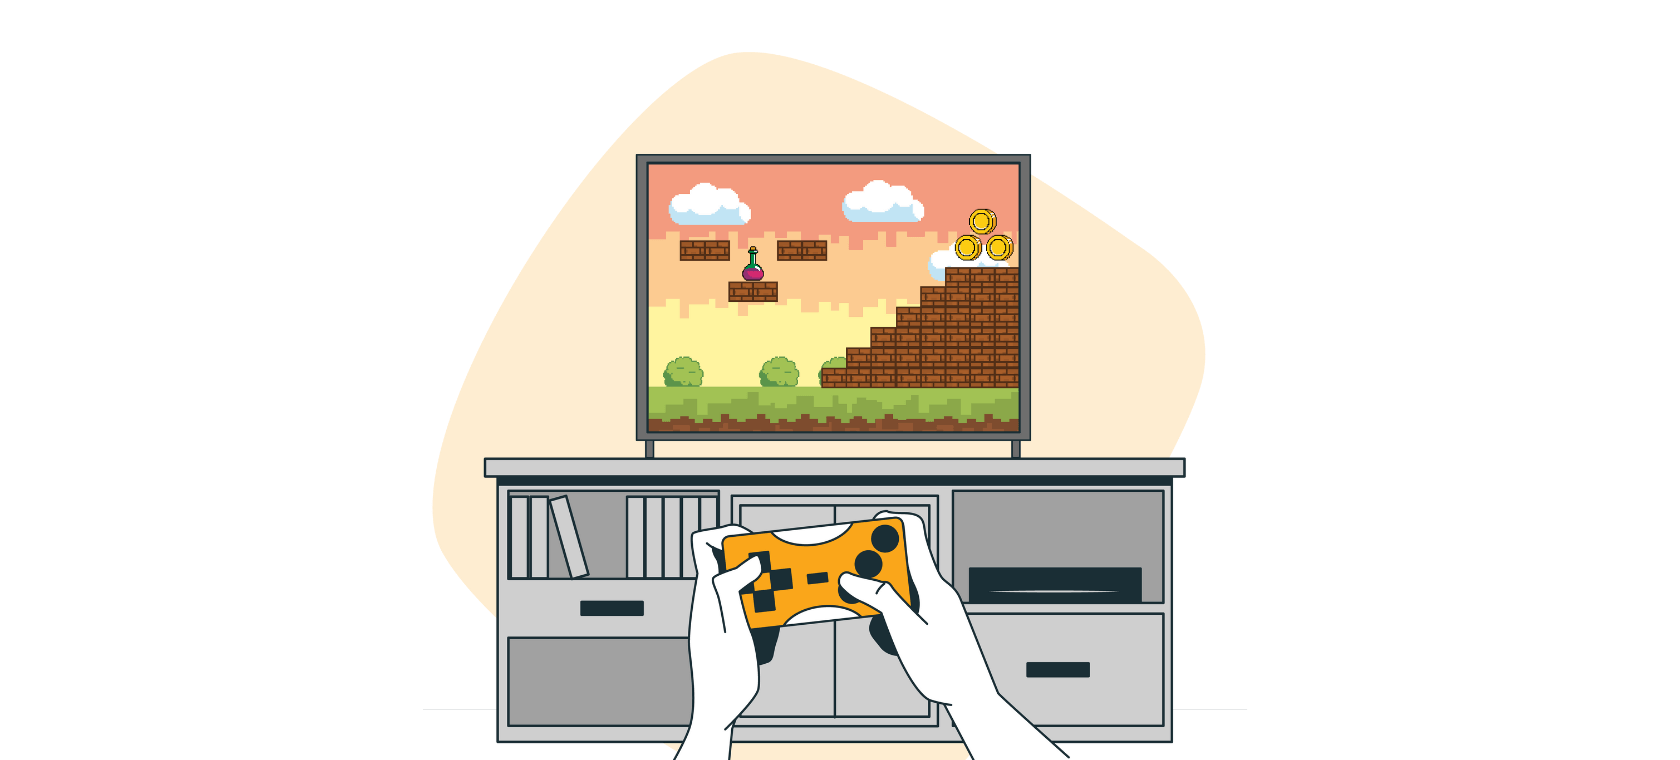 L'illustrazione mostra una console per videogiochi arancione.